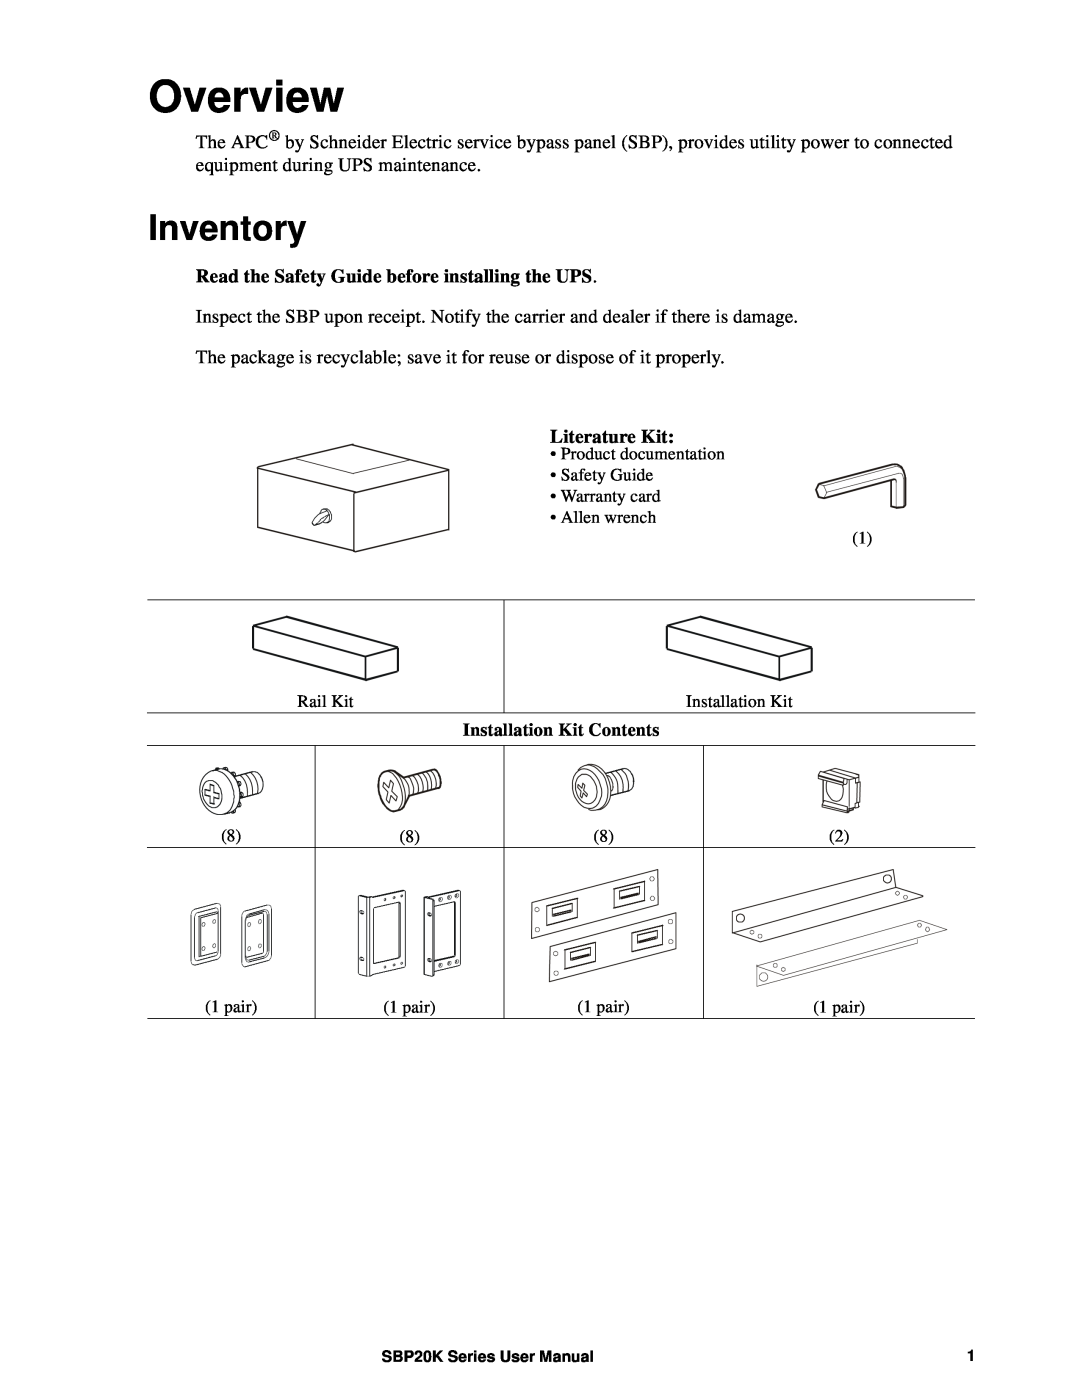 APC SBP20KRMT4U, SBP20KRMI4U, suo0707a, SBP20KP manual Overview, Inventory 